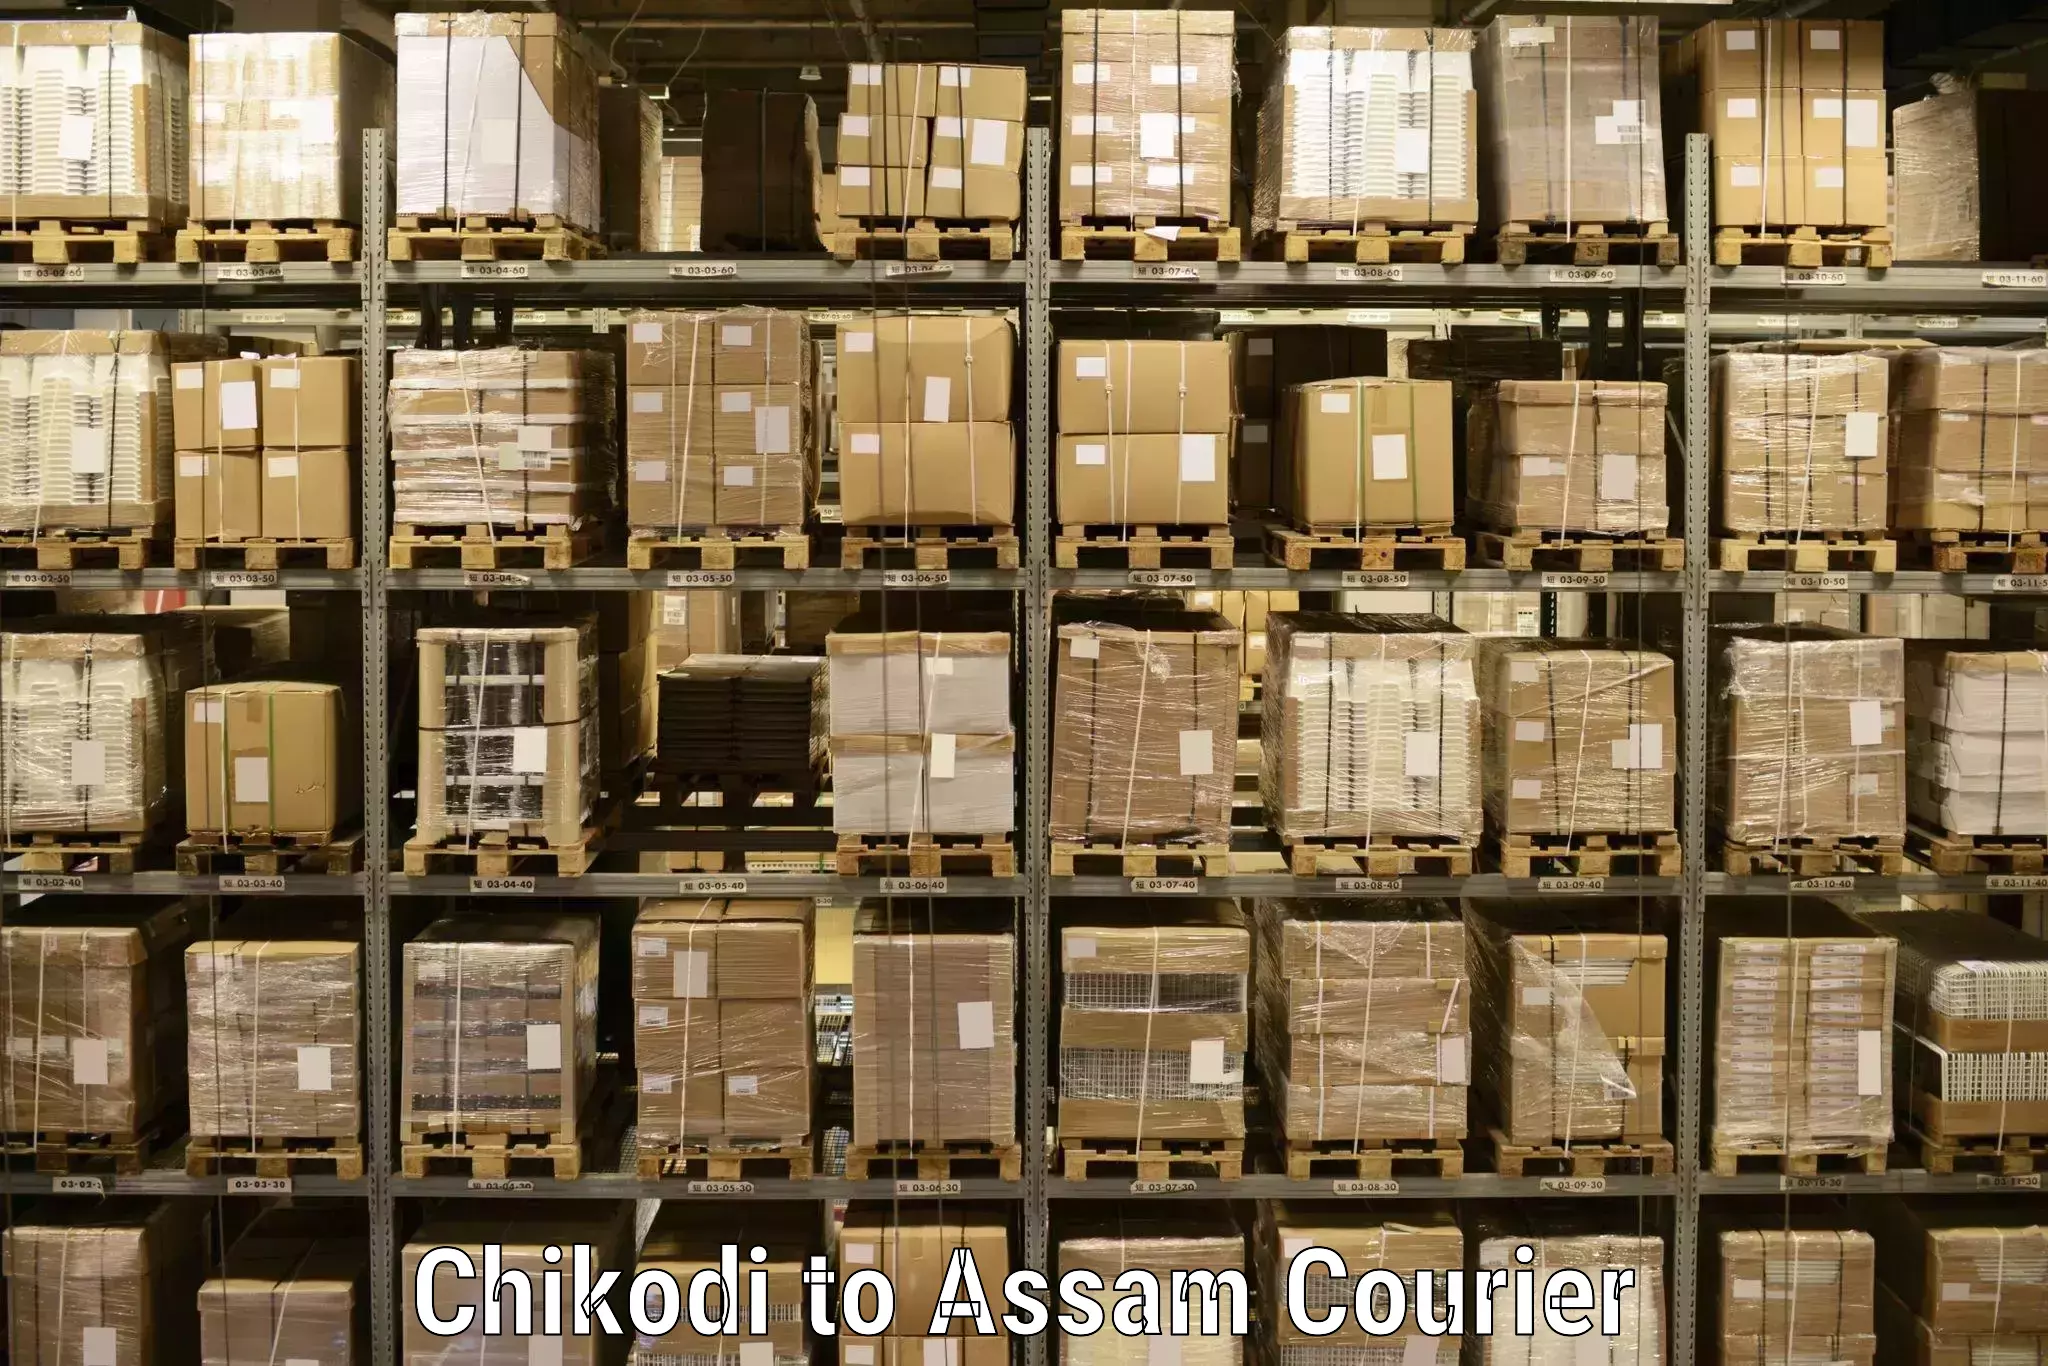 Advanced shipping technology Chikodi to Assam